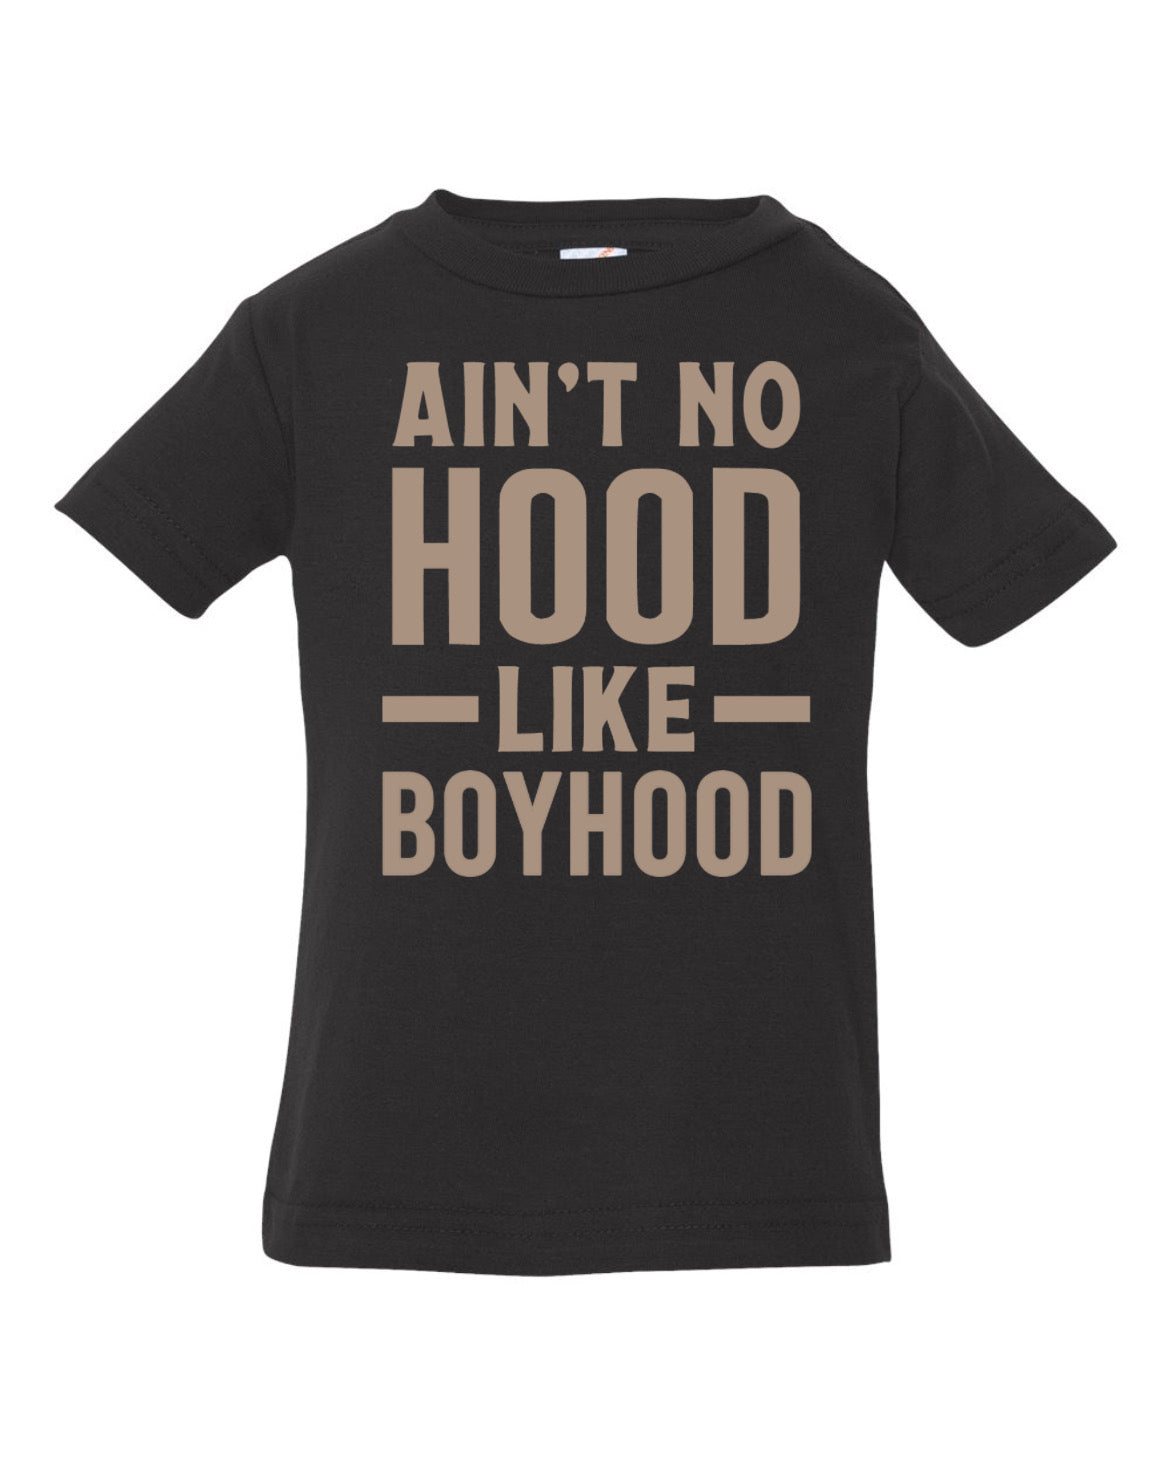 Ain’t no hood like boyhood